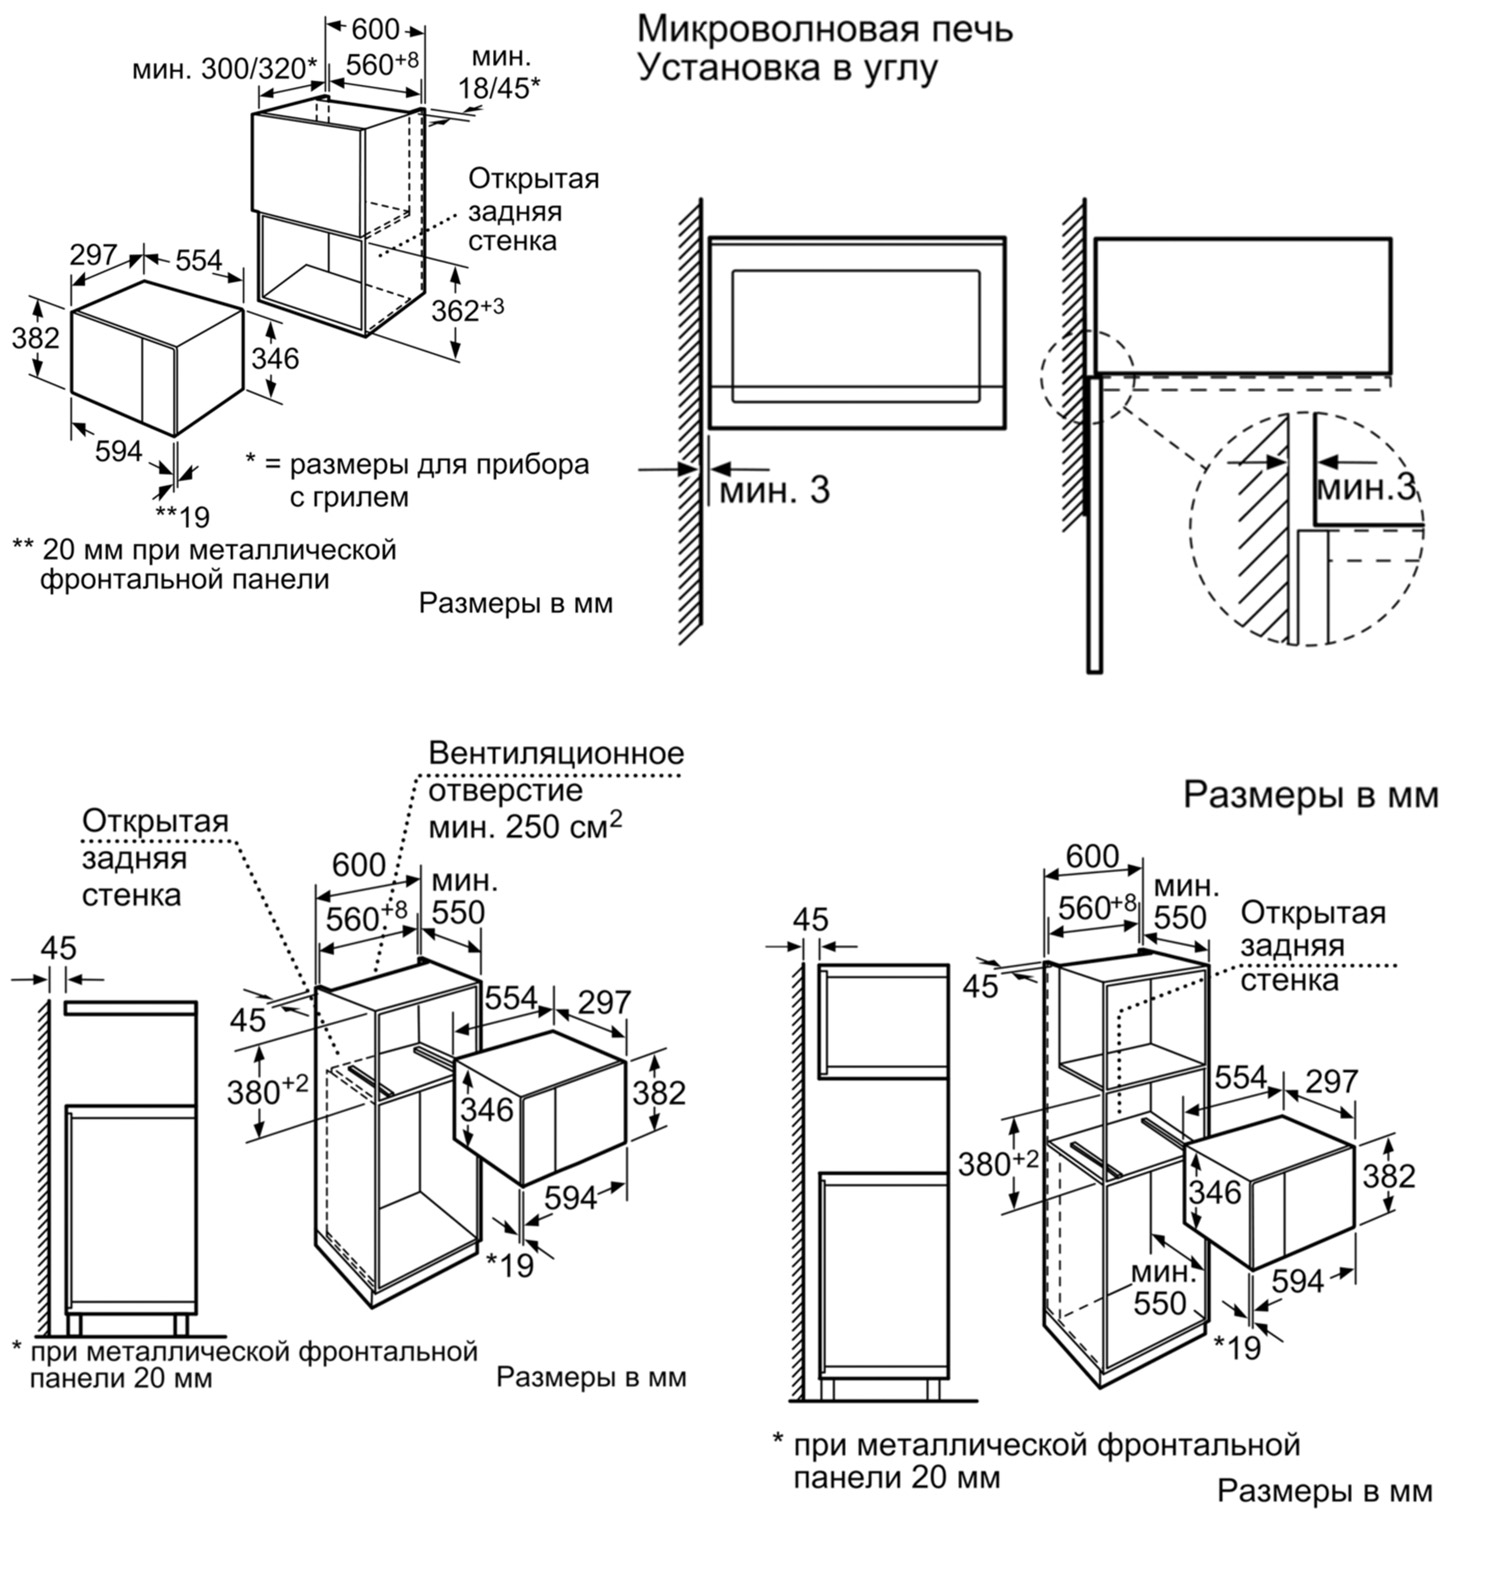 Правила установки микроволновки в шкаф